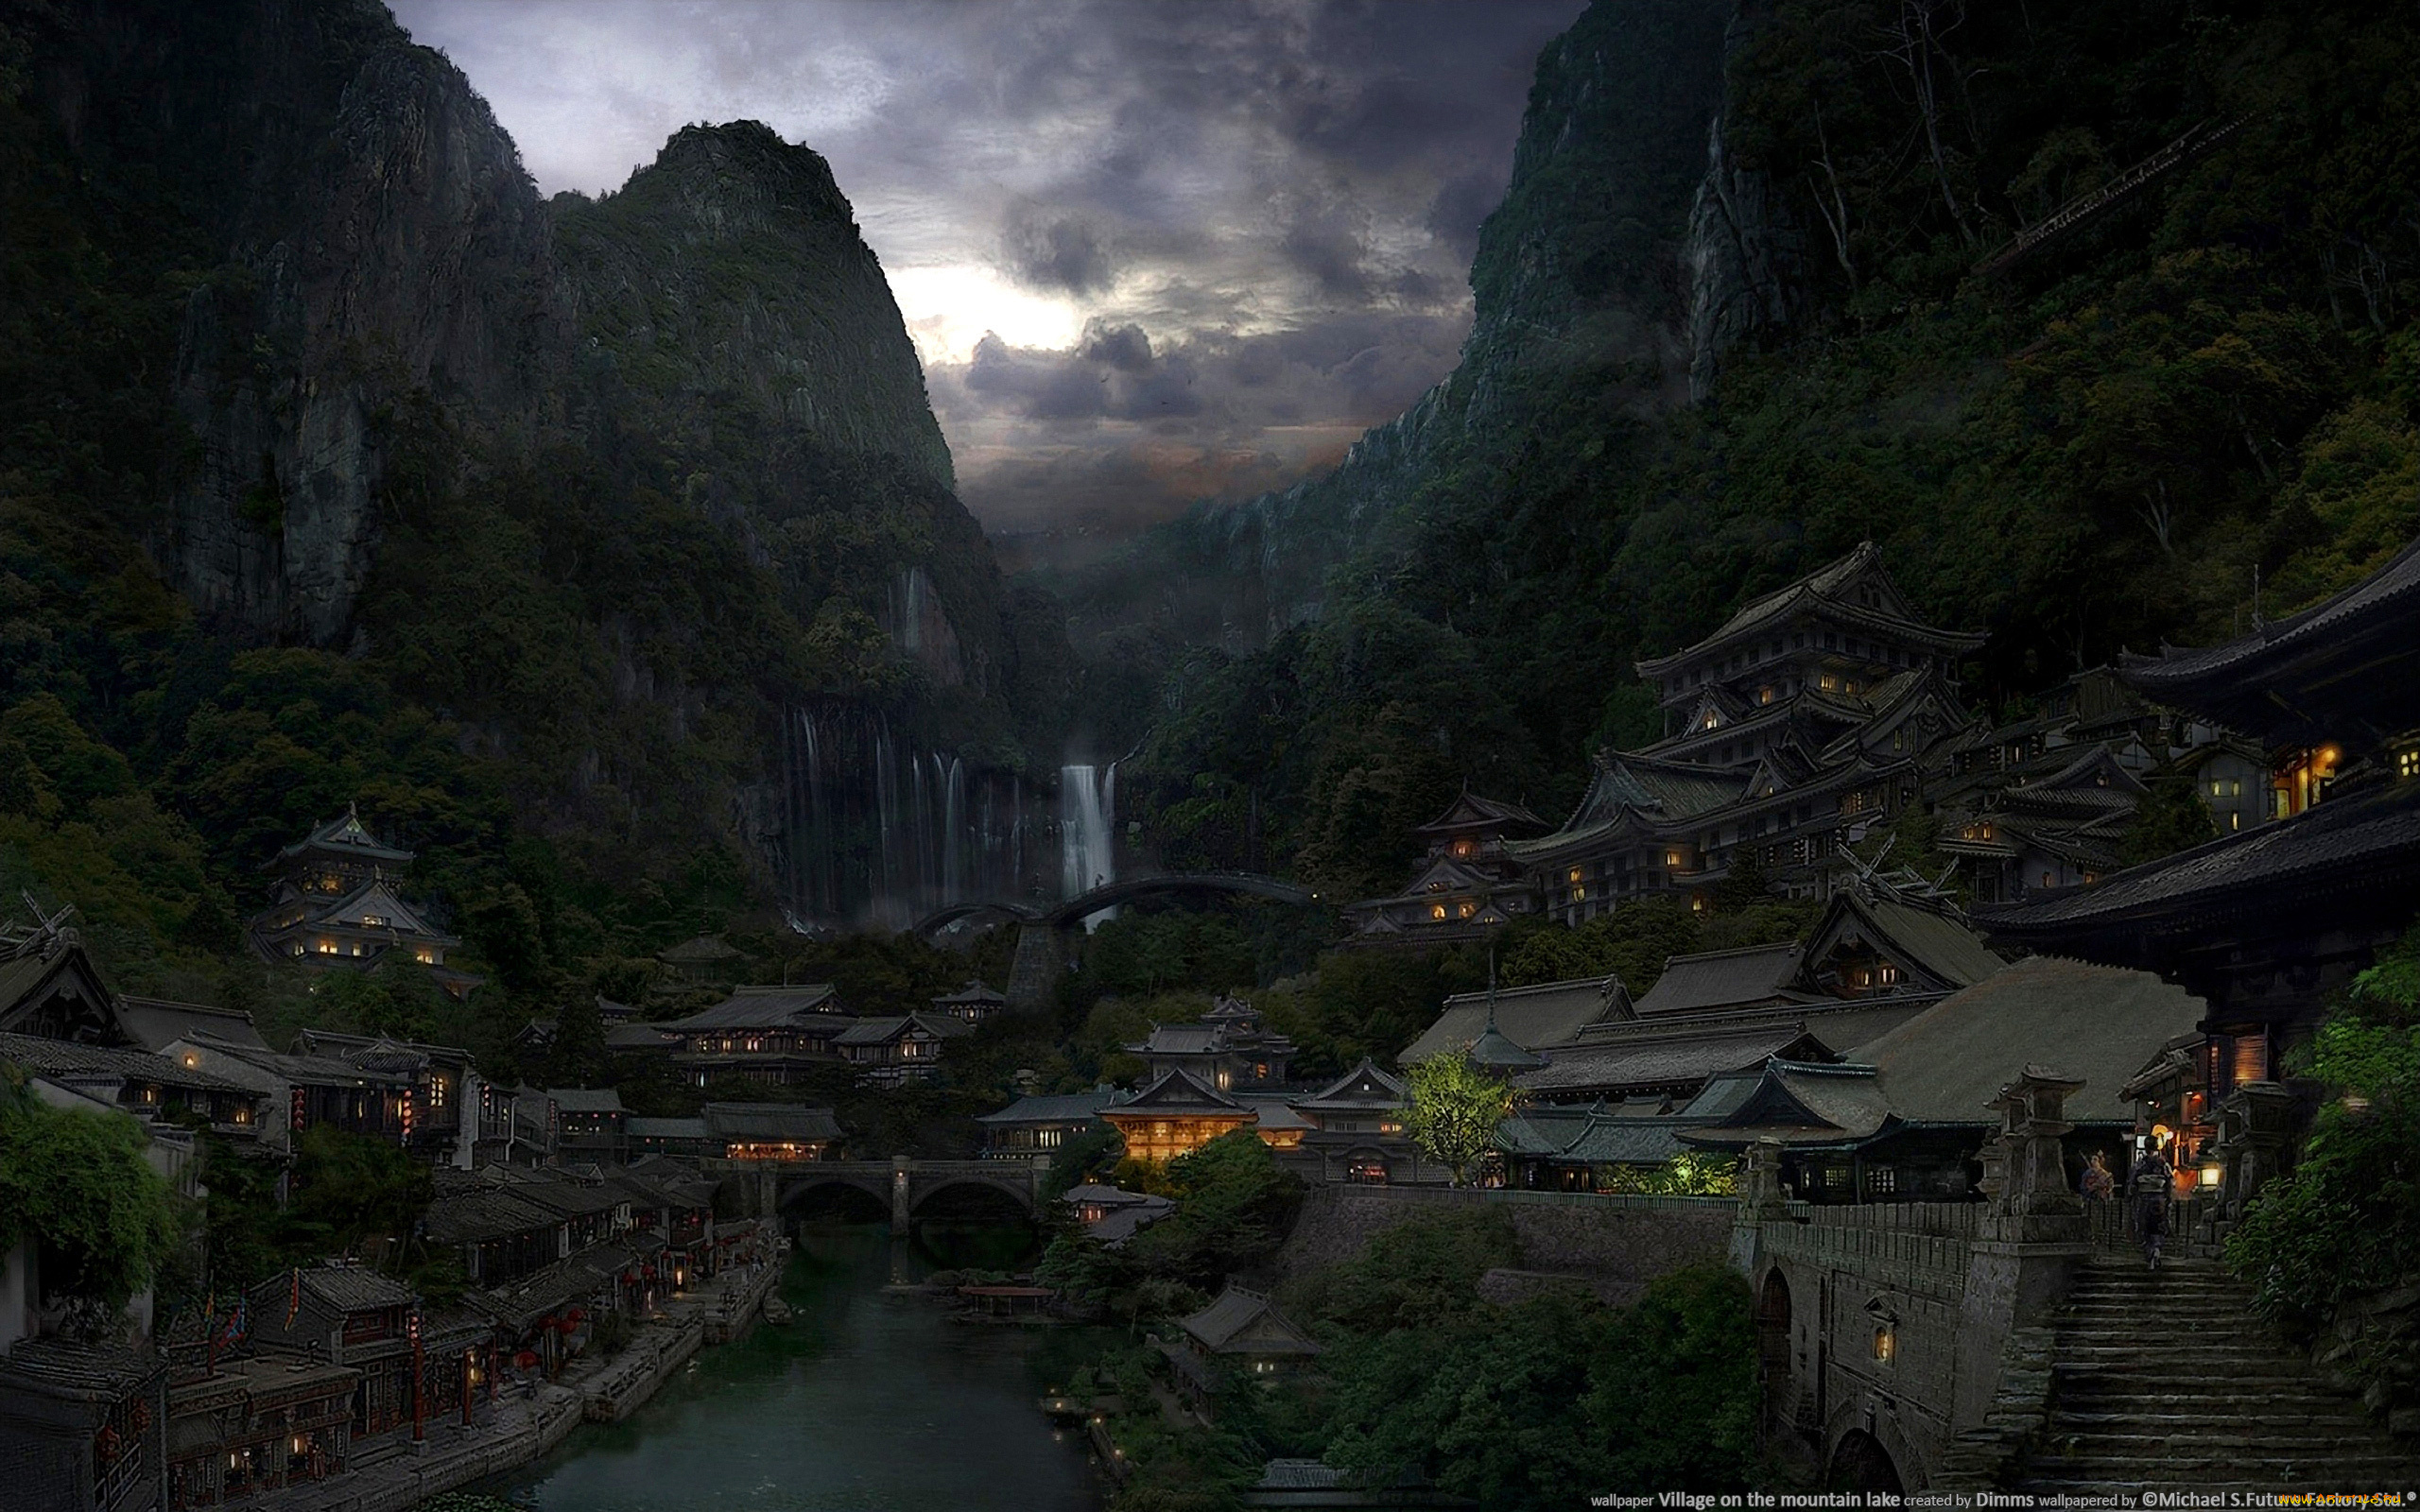 Город на горе в китае. Китайская Горная деревня Вансянь. Азиатский пейзаж. Японская деревня в горах.